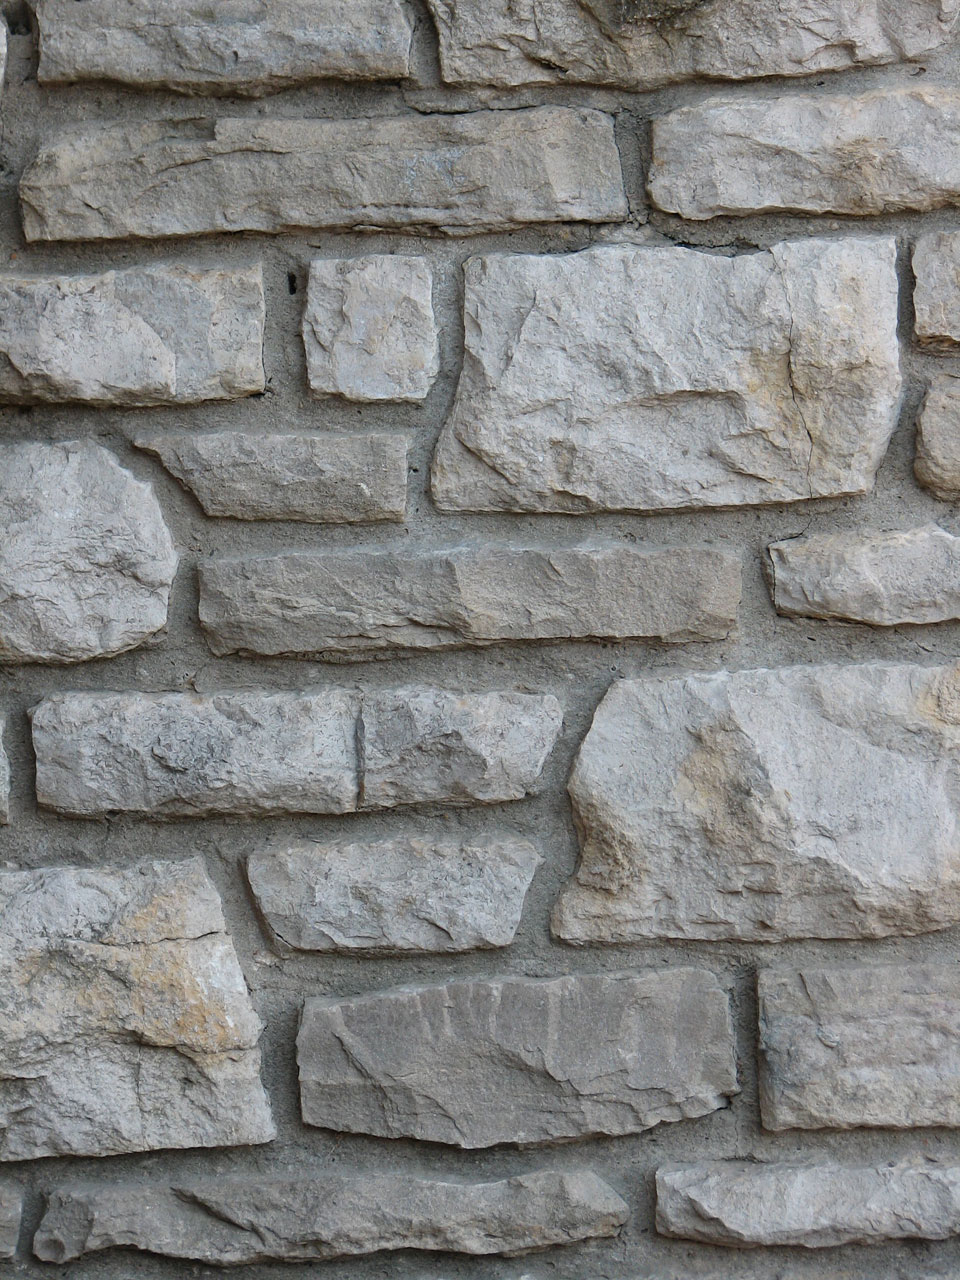 Brick Texture Closeup